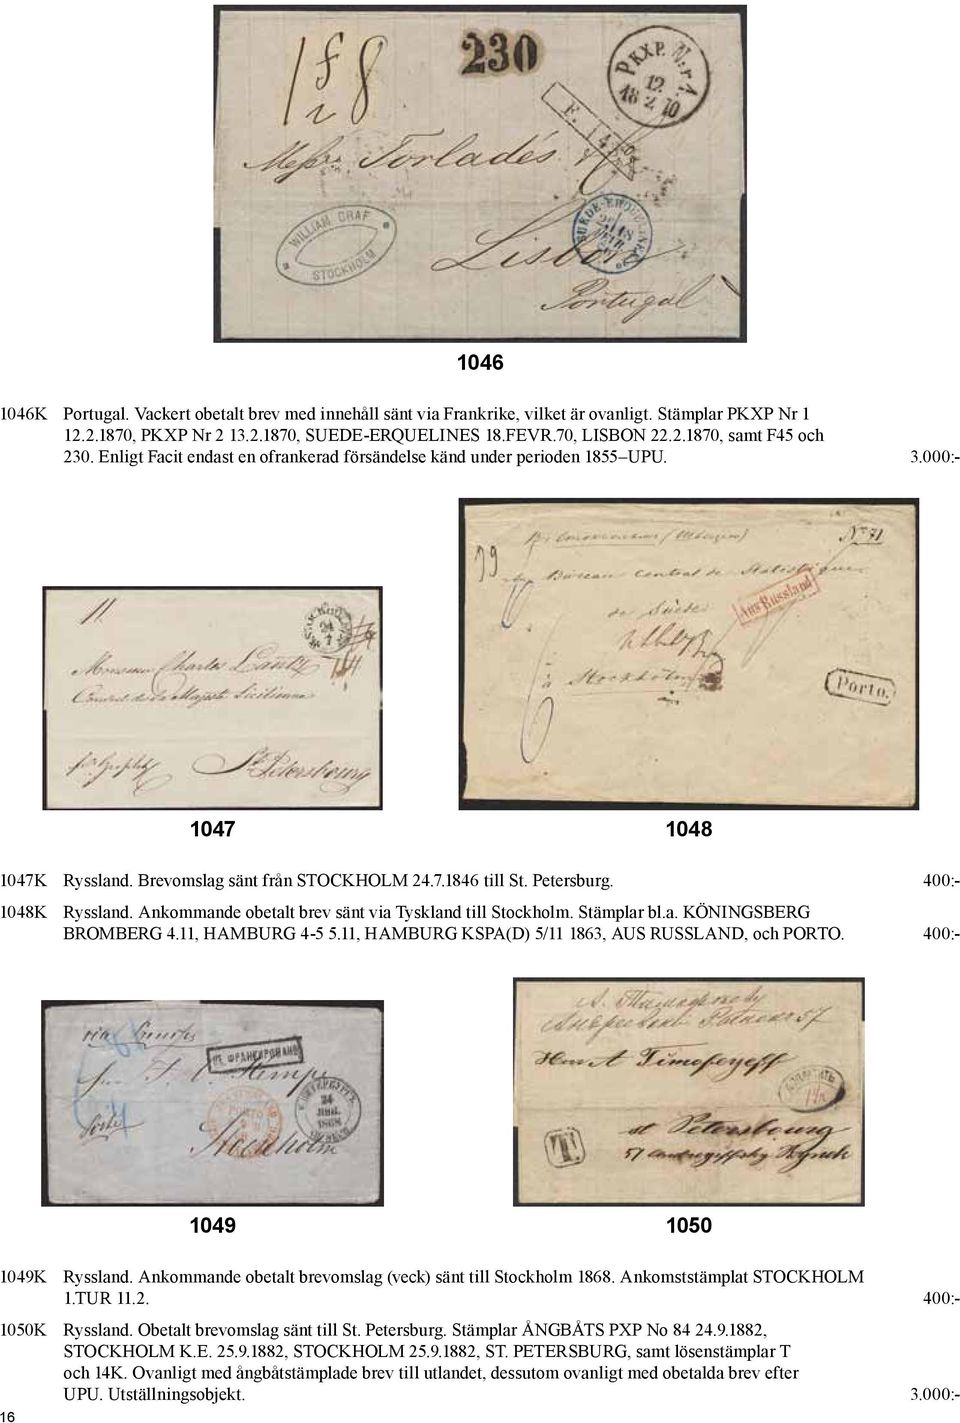 Ankommande obetalt brev sänt via Tyskland till Stockholm. Stämplar bl.a. KÖNINGSBERG BROMBERG 4.11, HAMBURG 4-5 5.11, HAMBURG KSPA(D) 5/11 1863, AUS RUSSLAND, och PORTO.